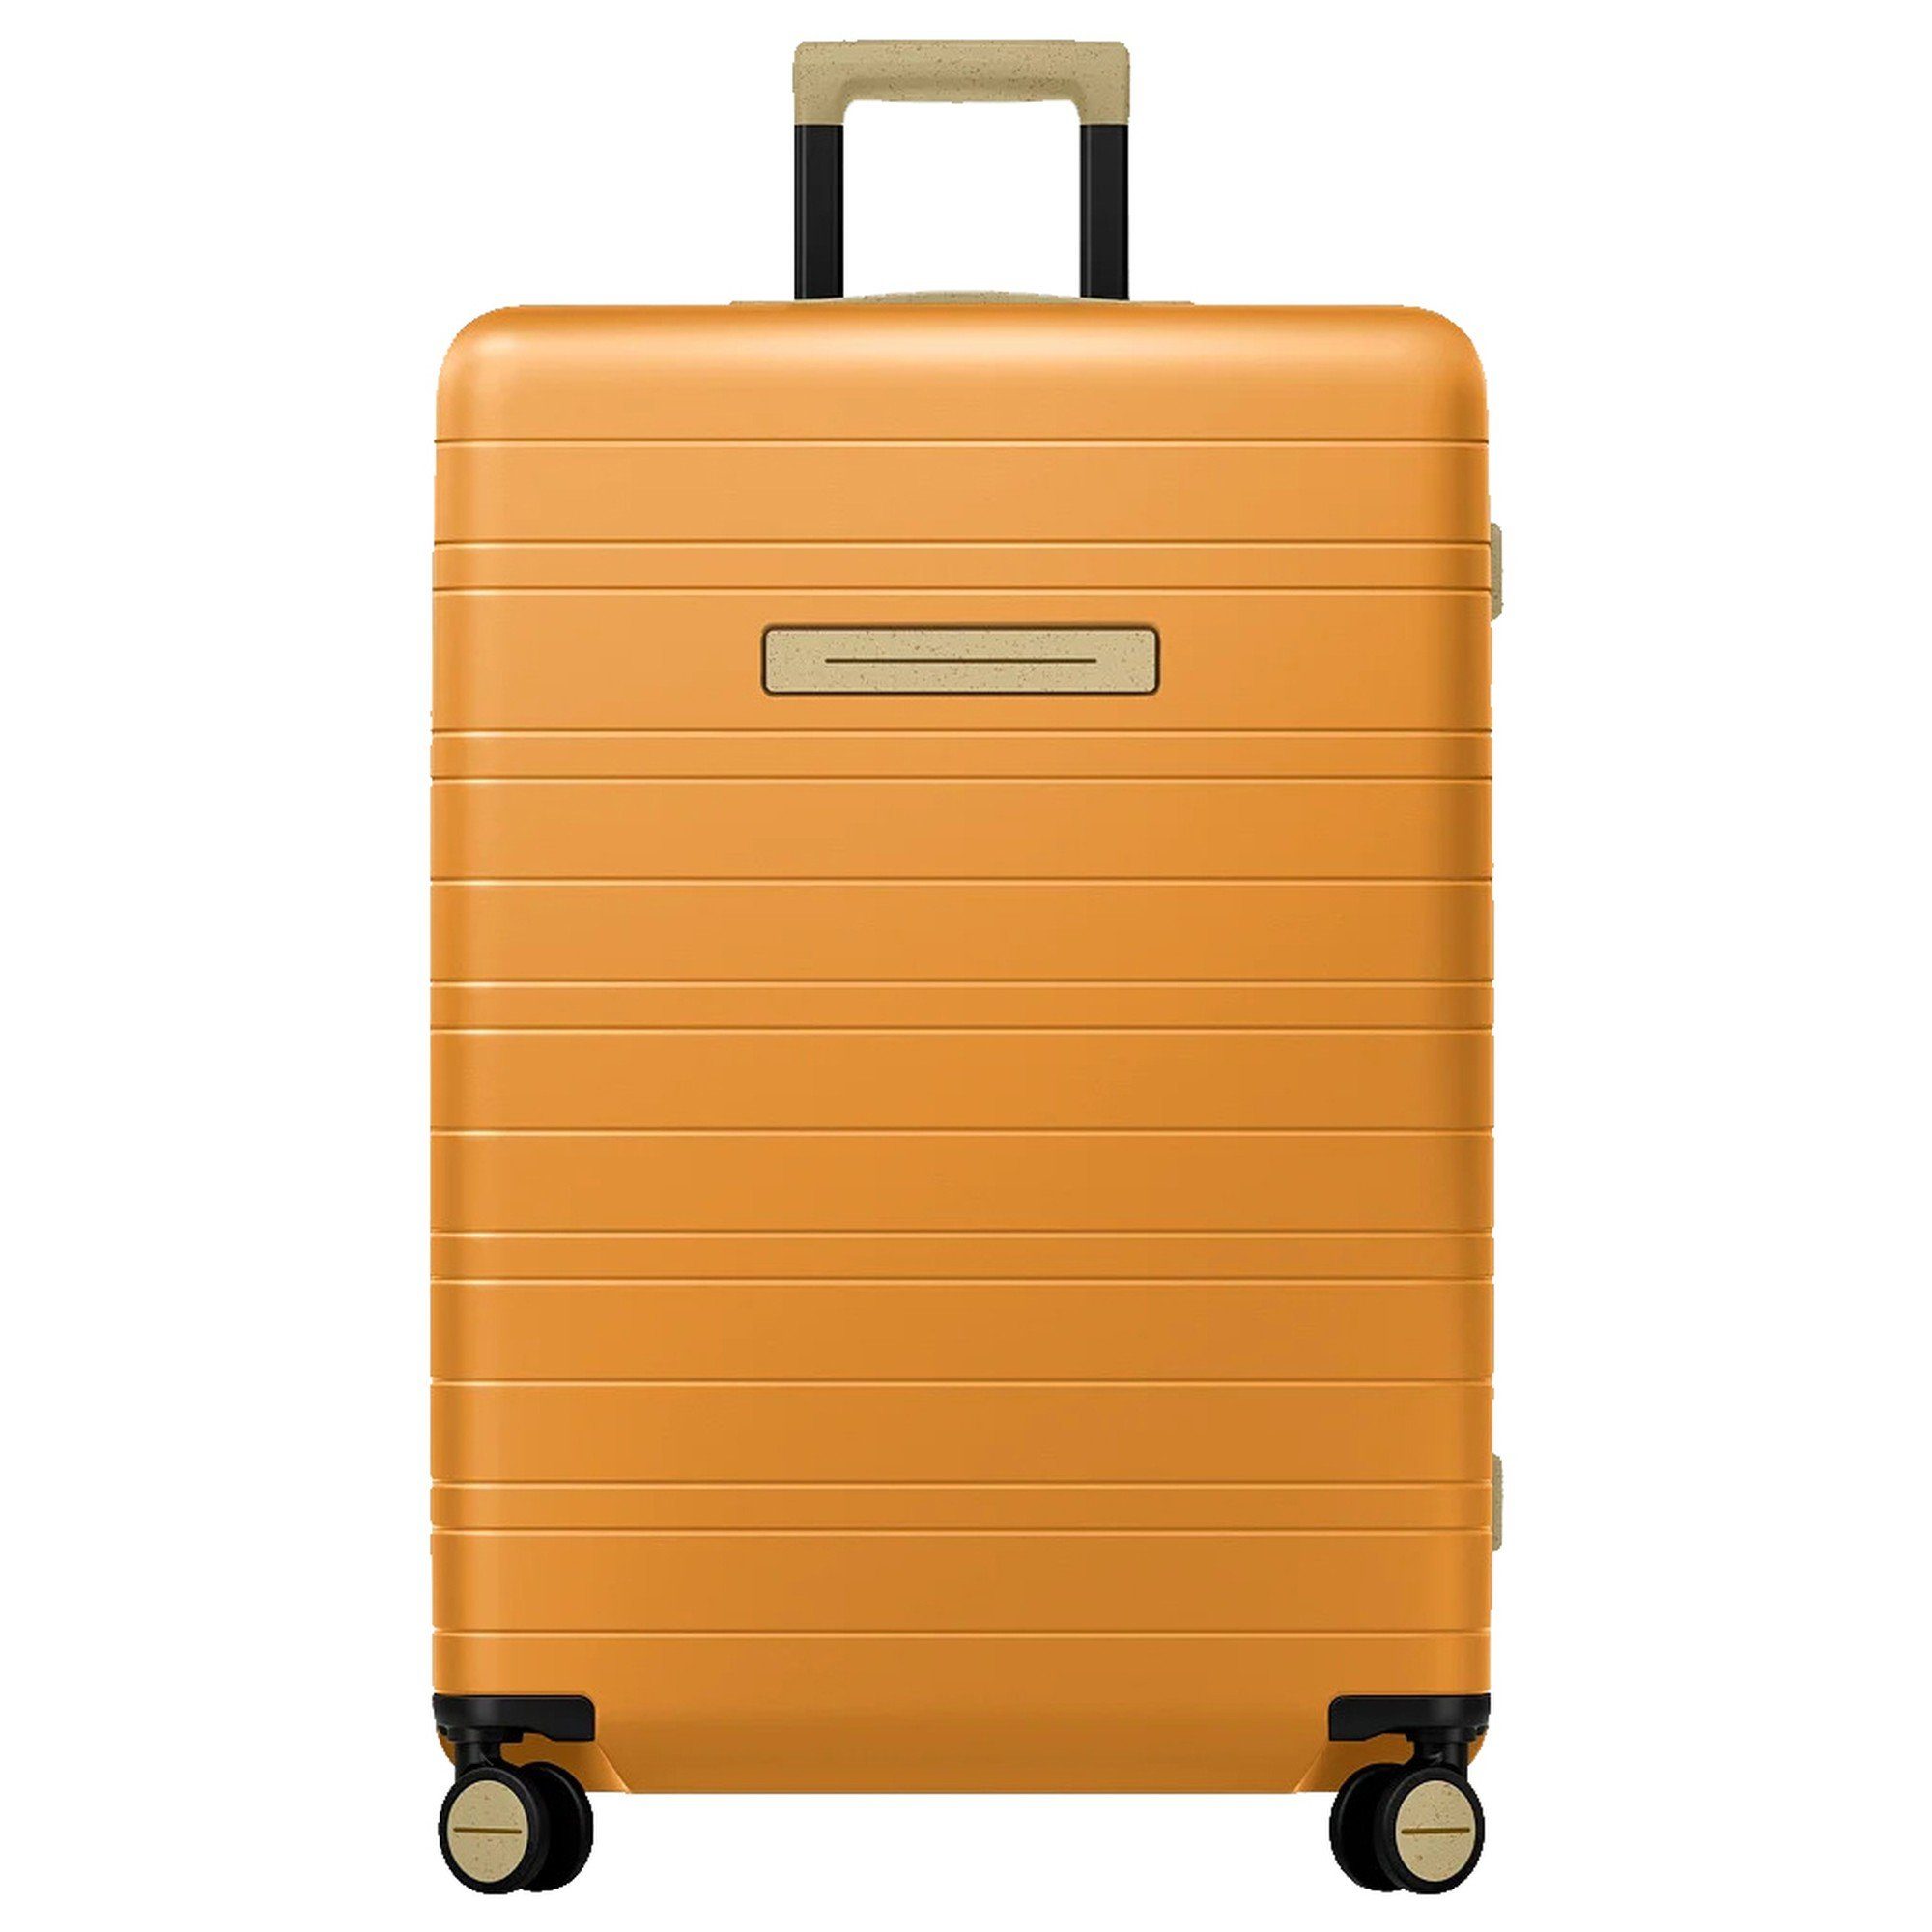 Orange Koffer online kaufen | OTTO